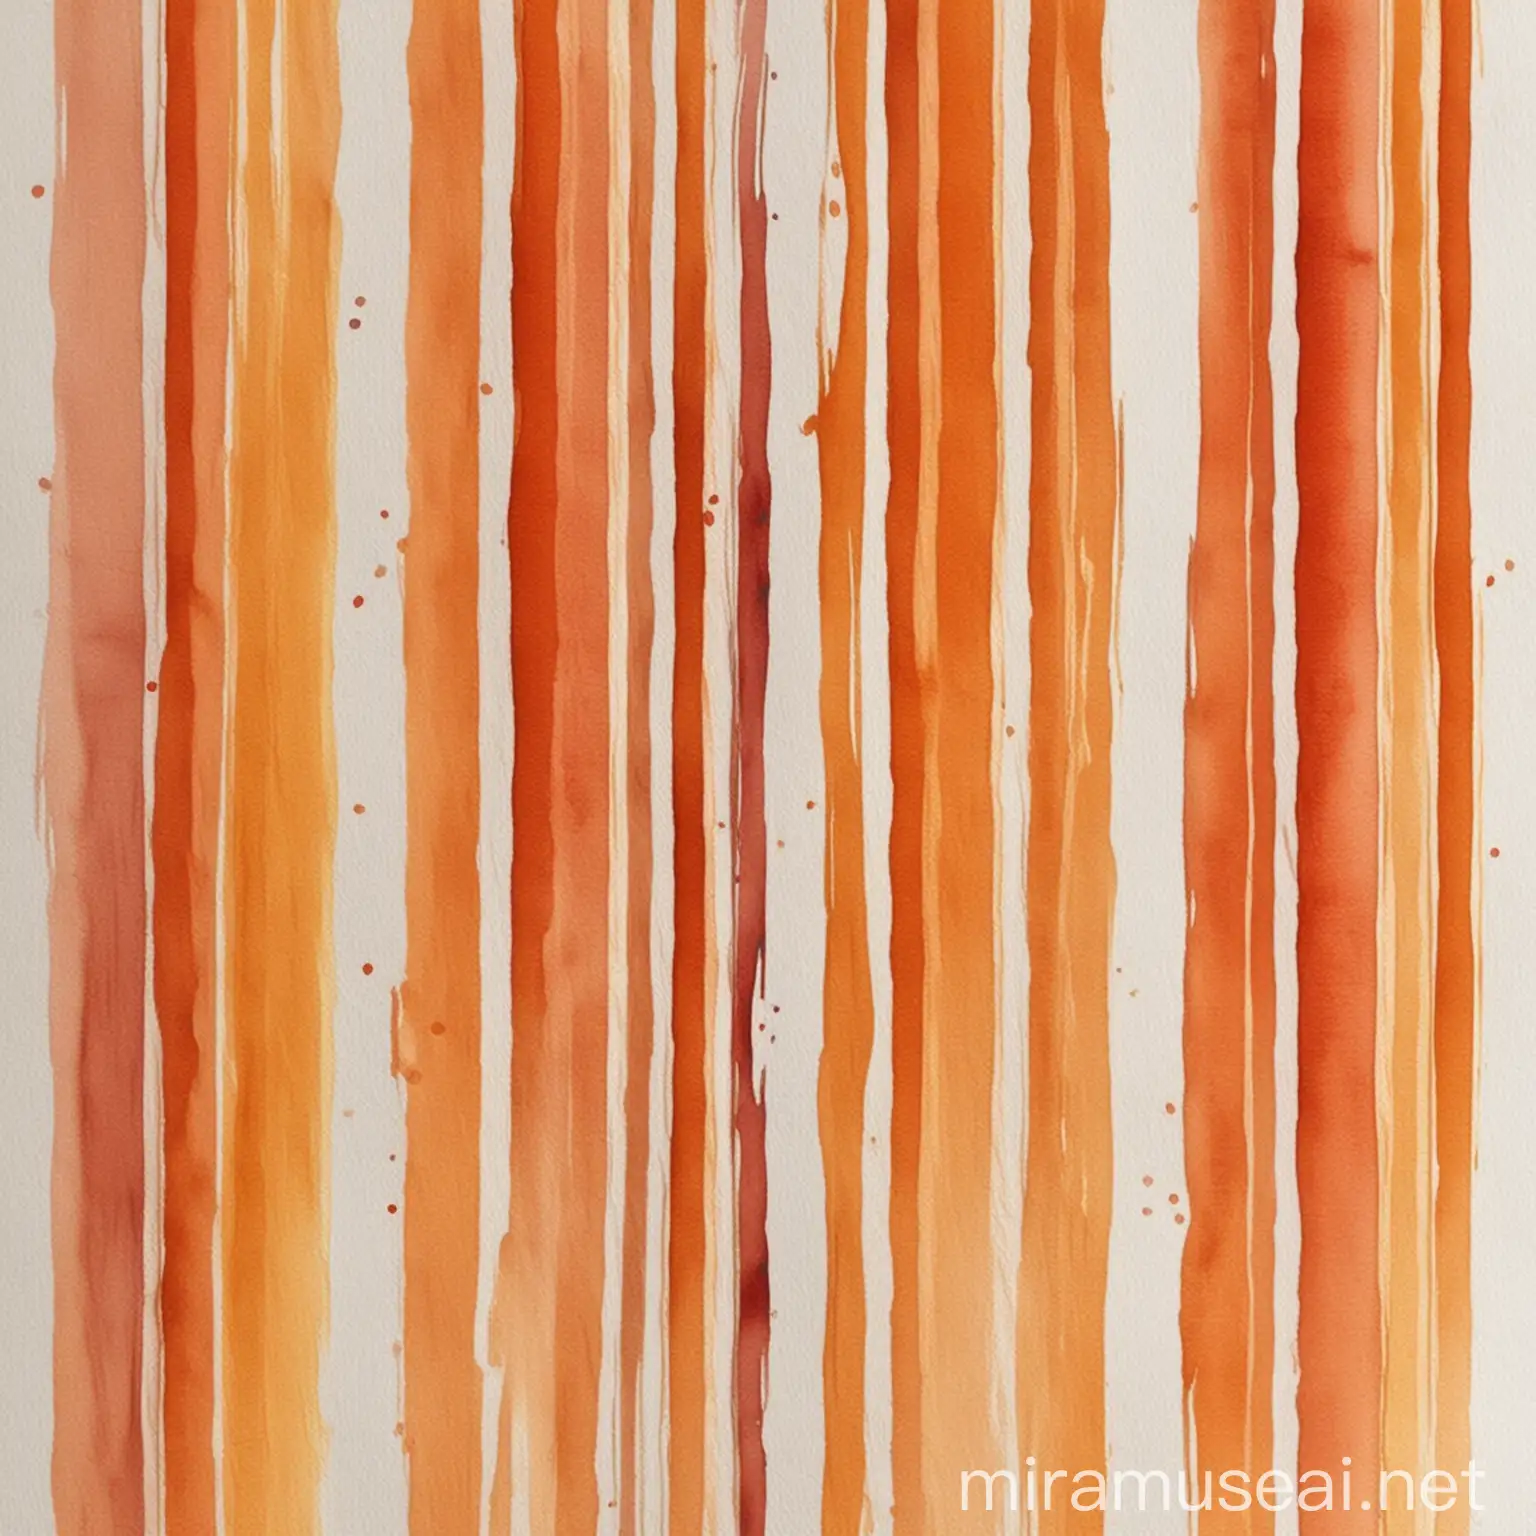 dipingi con colori caldi ad acquerelli uniformi a fasce verticali, utilizzando i toni di una fiamma